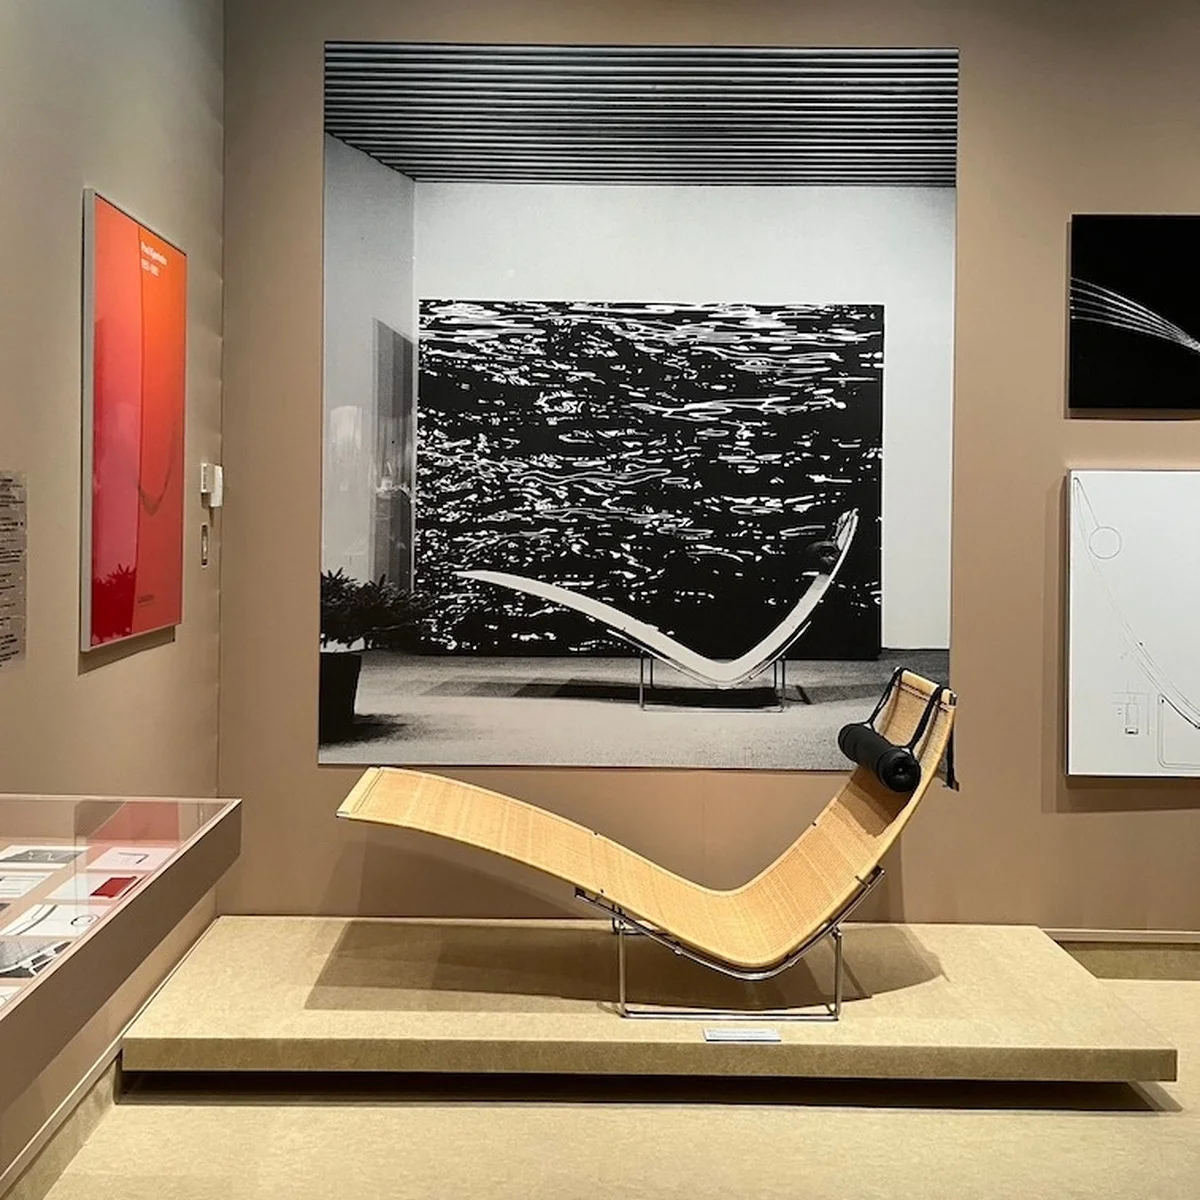 日本の美術館では初！ 北欧モダンデザインの名匠、ポール・ケアホルムのキャリアを網羅する個展がパナソニック汐留美術館で開催中